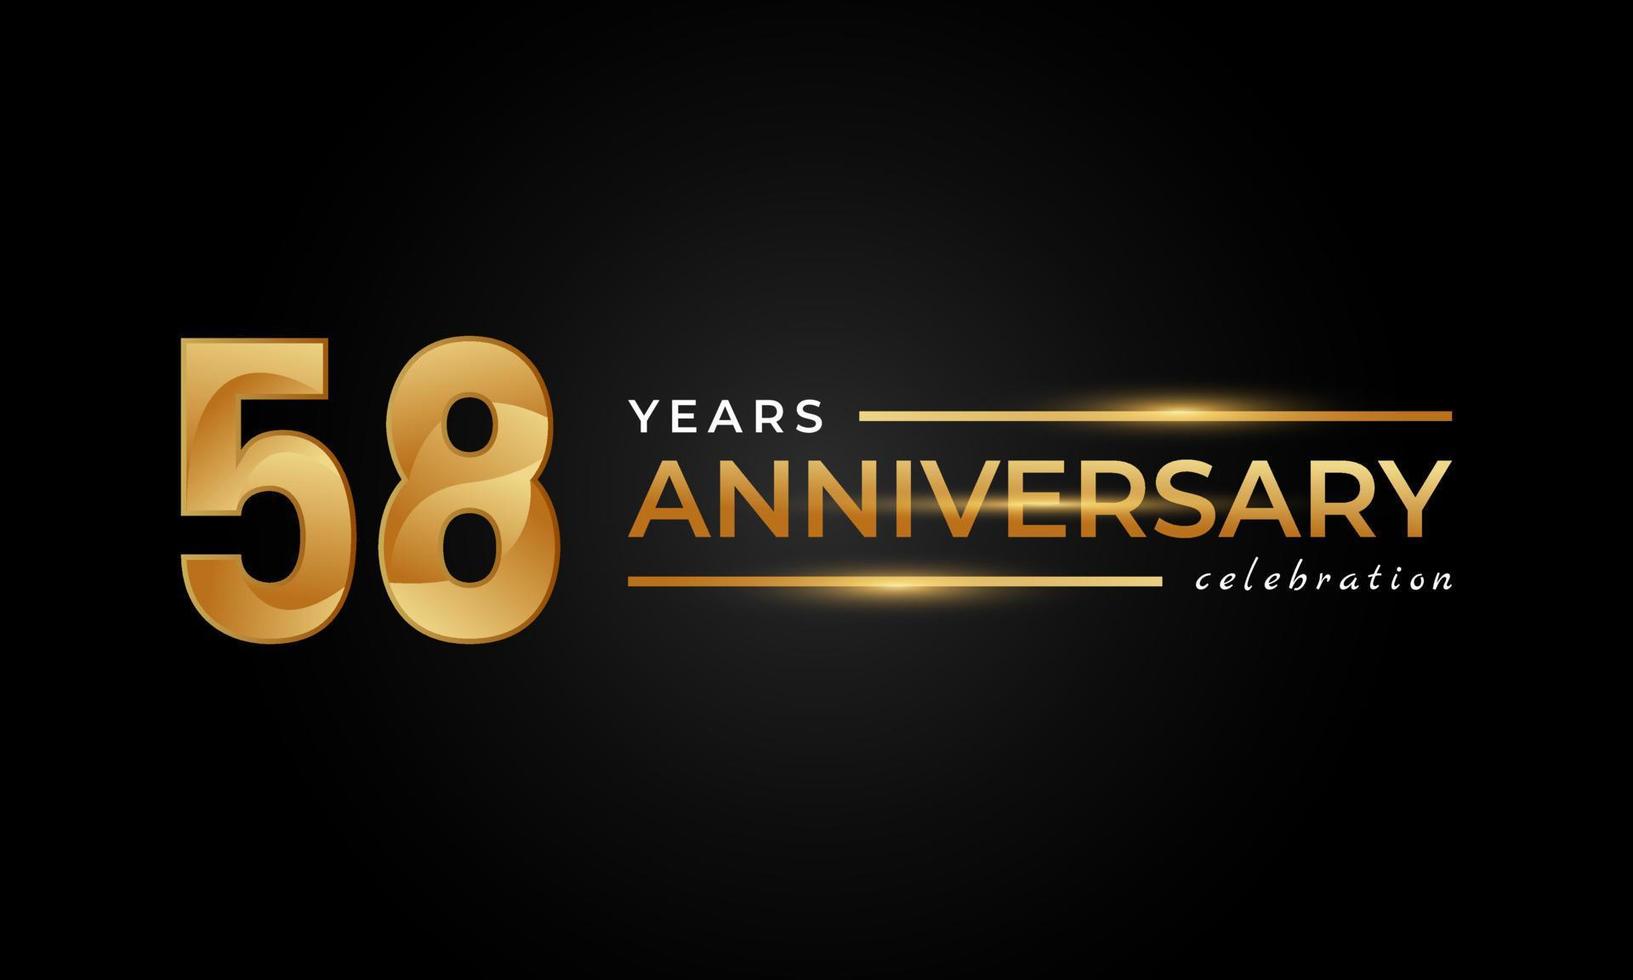 58-jährige Jubiläumsfeier mit glänzender goldener und silberner Farbe für Feierlichkeiten, Hochzeiten, Grußkarten und Einladungen einzeln auf schwarzem Hintergrund vektor